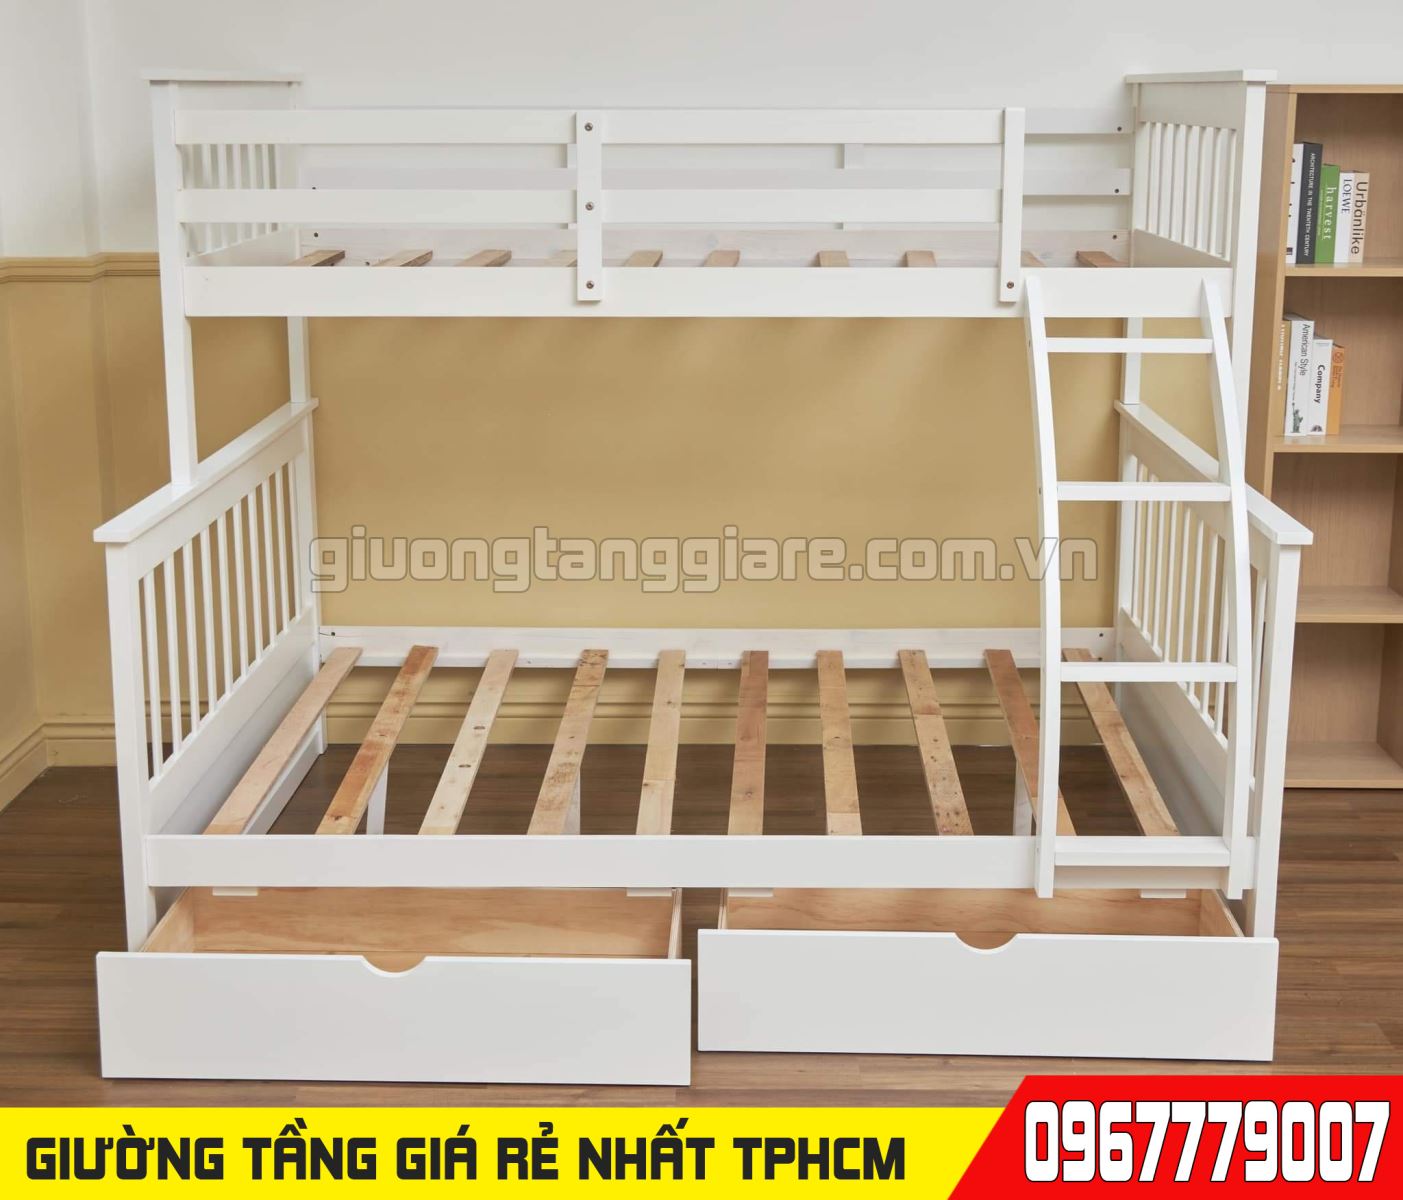 CH bán giường tầng trẻ em giá rẻ uy tín nhất Quận Gò Vấp TPHCM 33